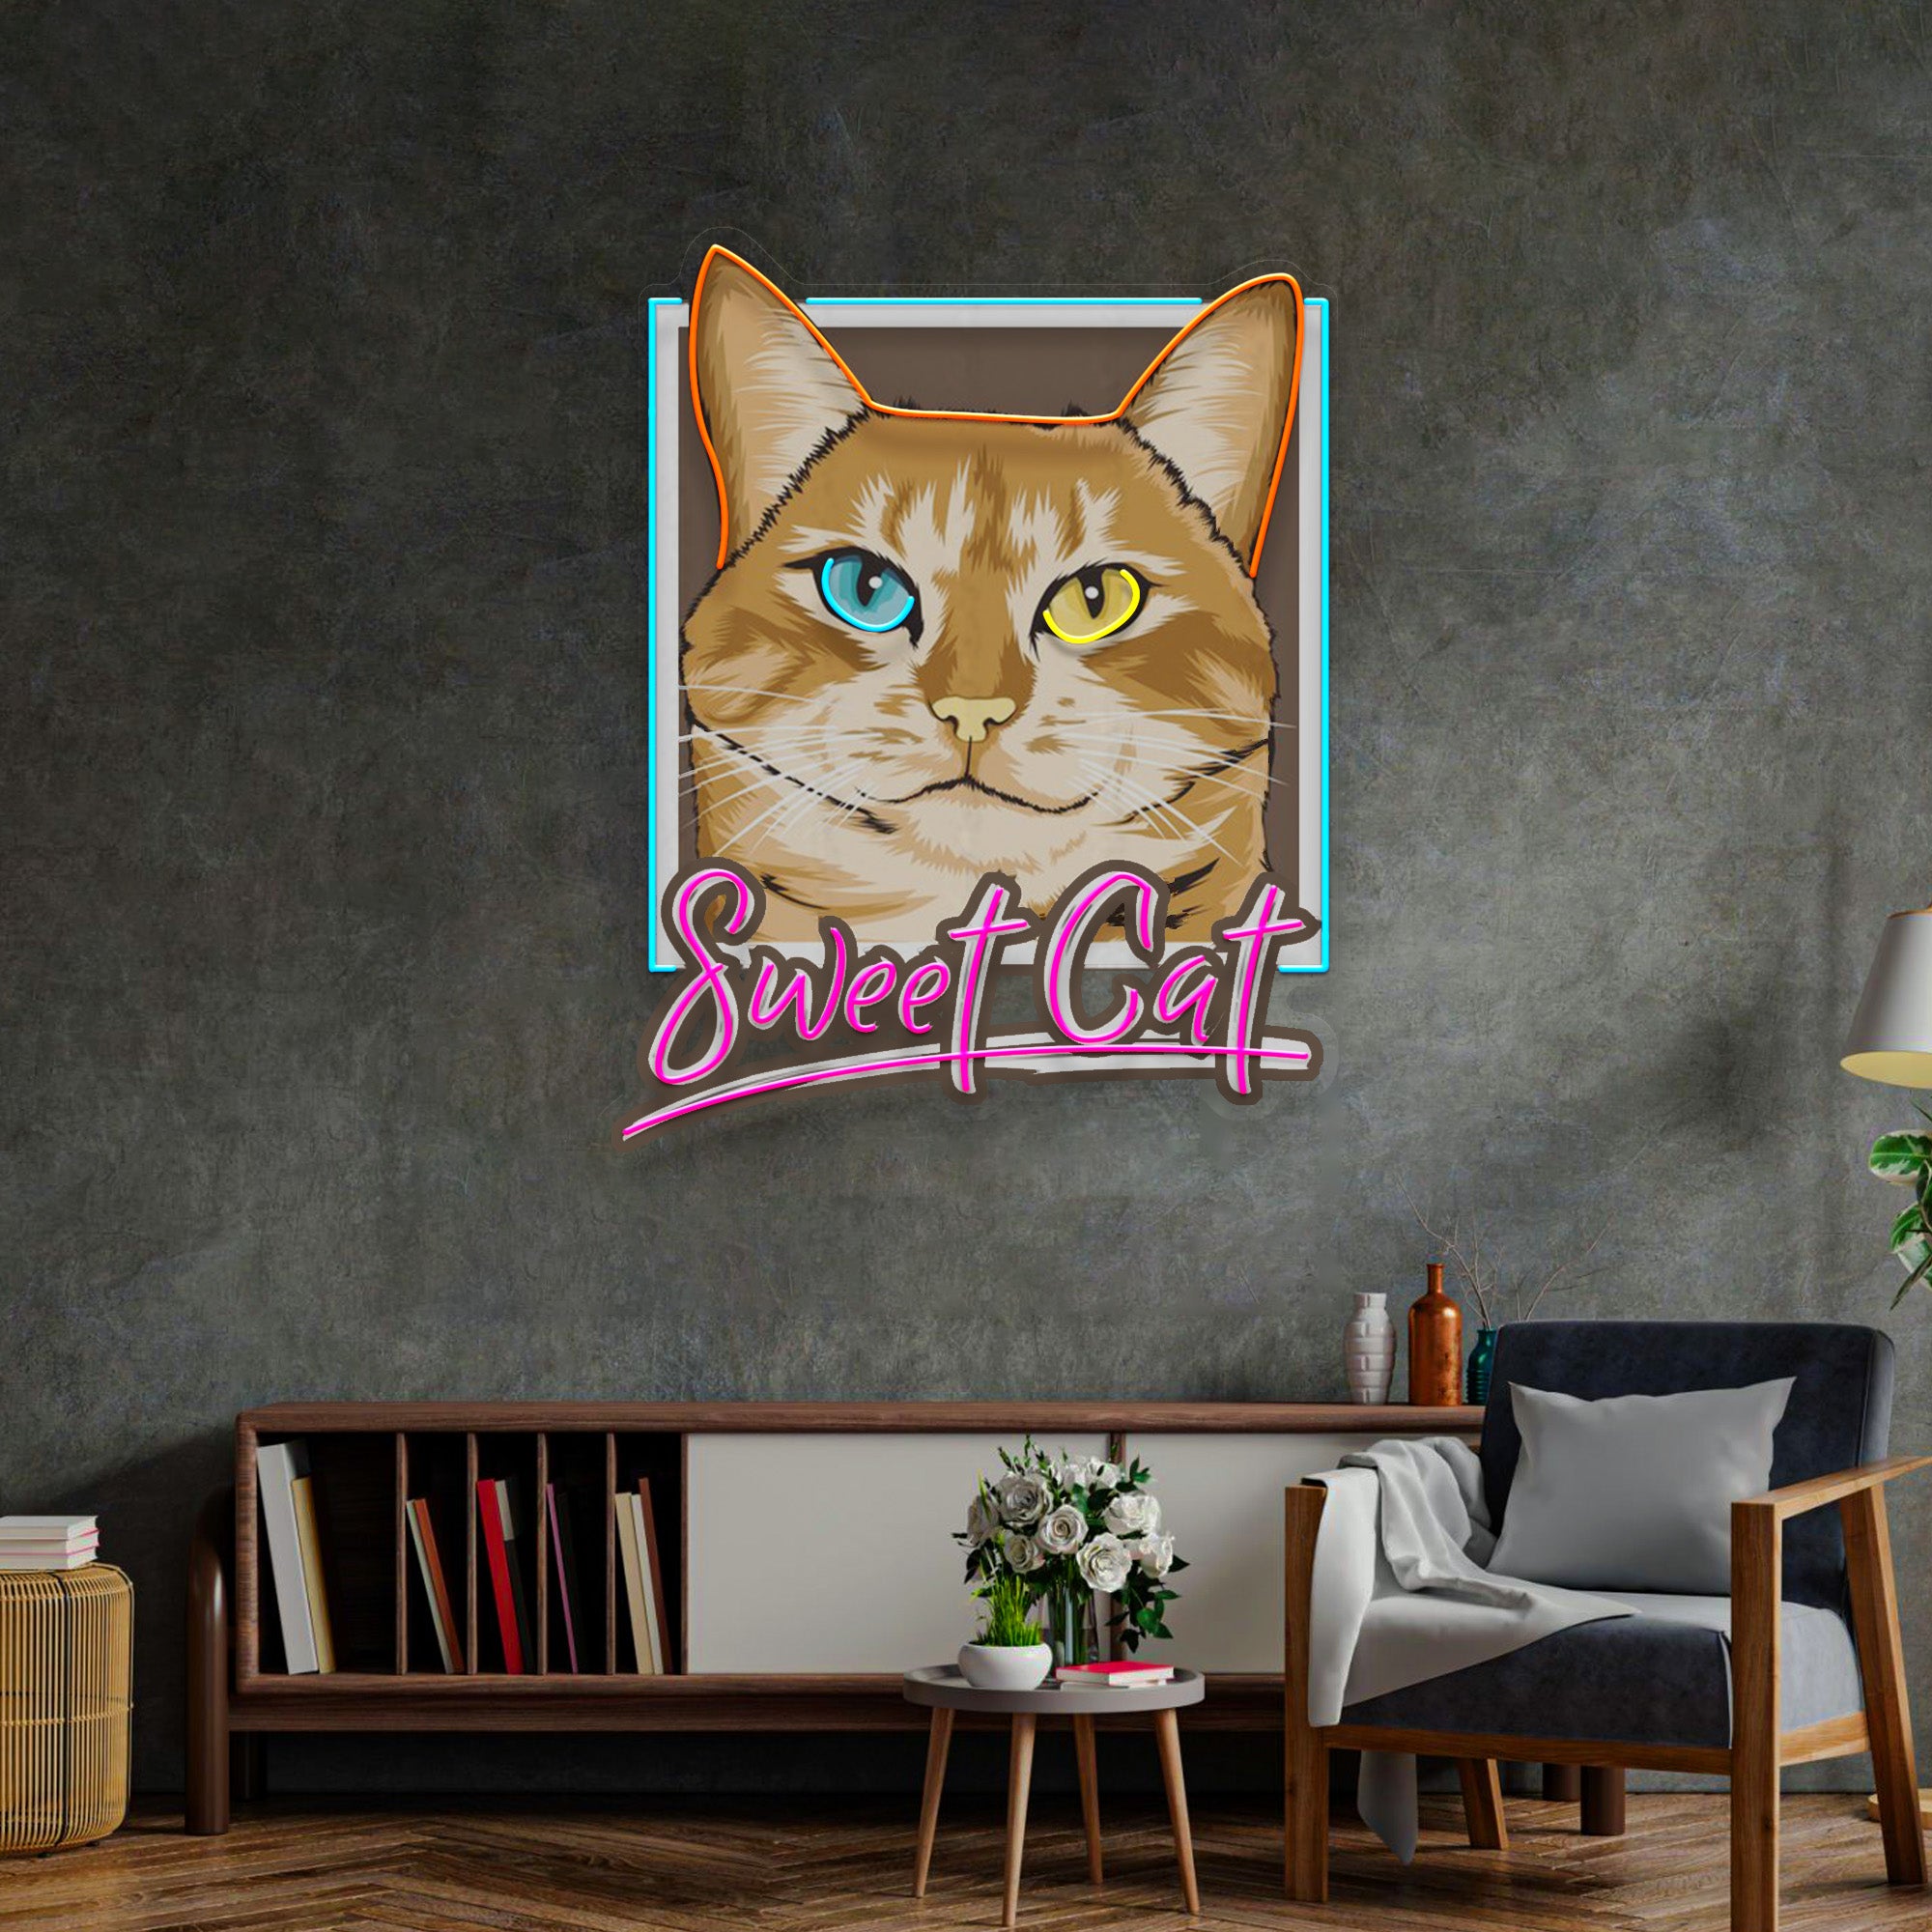 Sweet Cat LED Neon Sign Light Pop Art